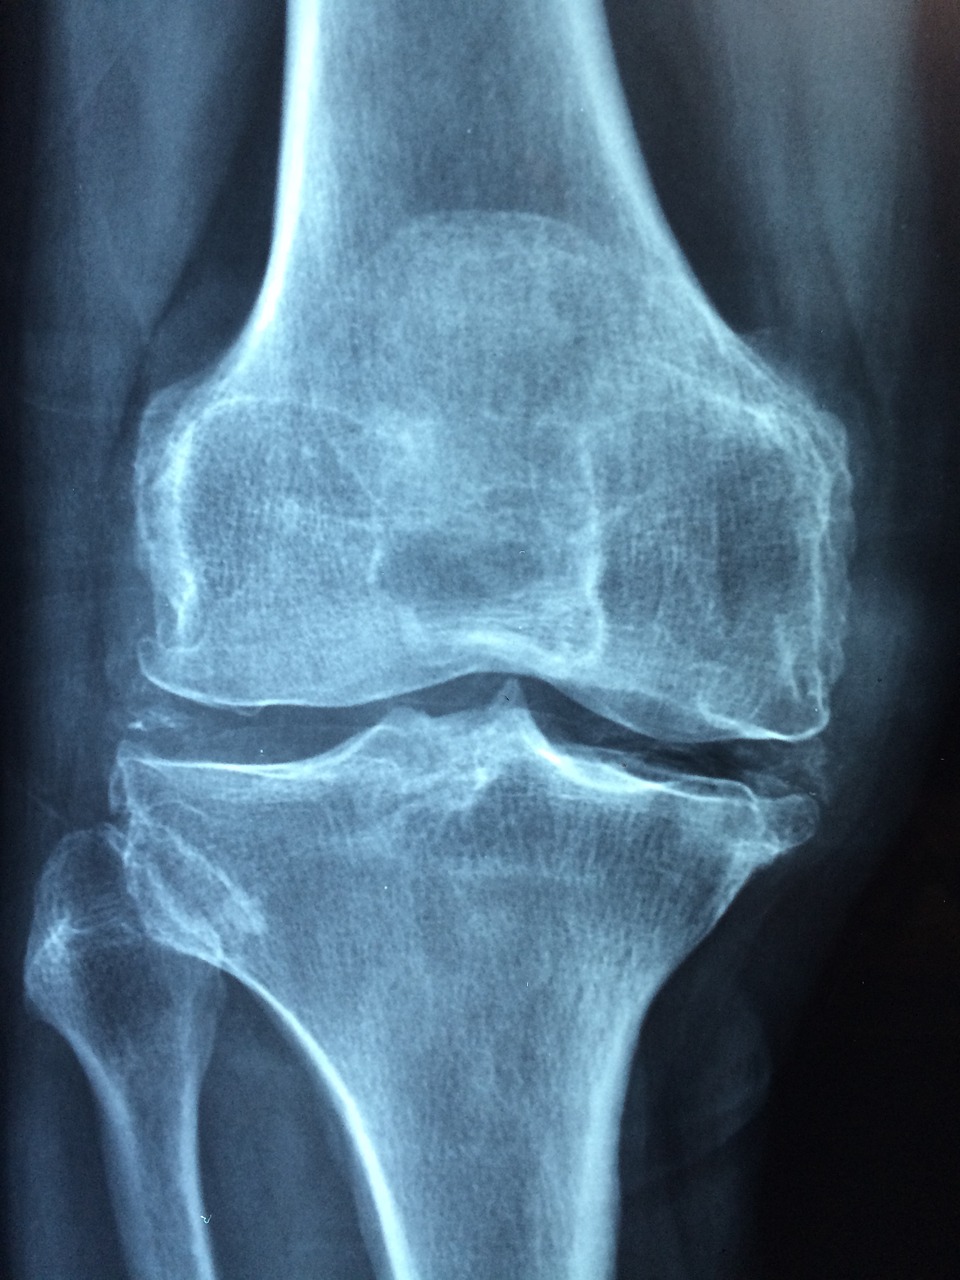 Knee Old Care Injury Pain - Taokinesis / Pixabay